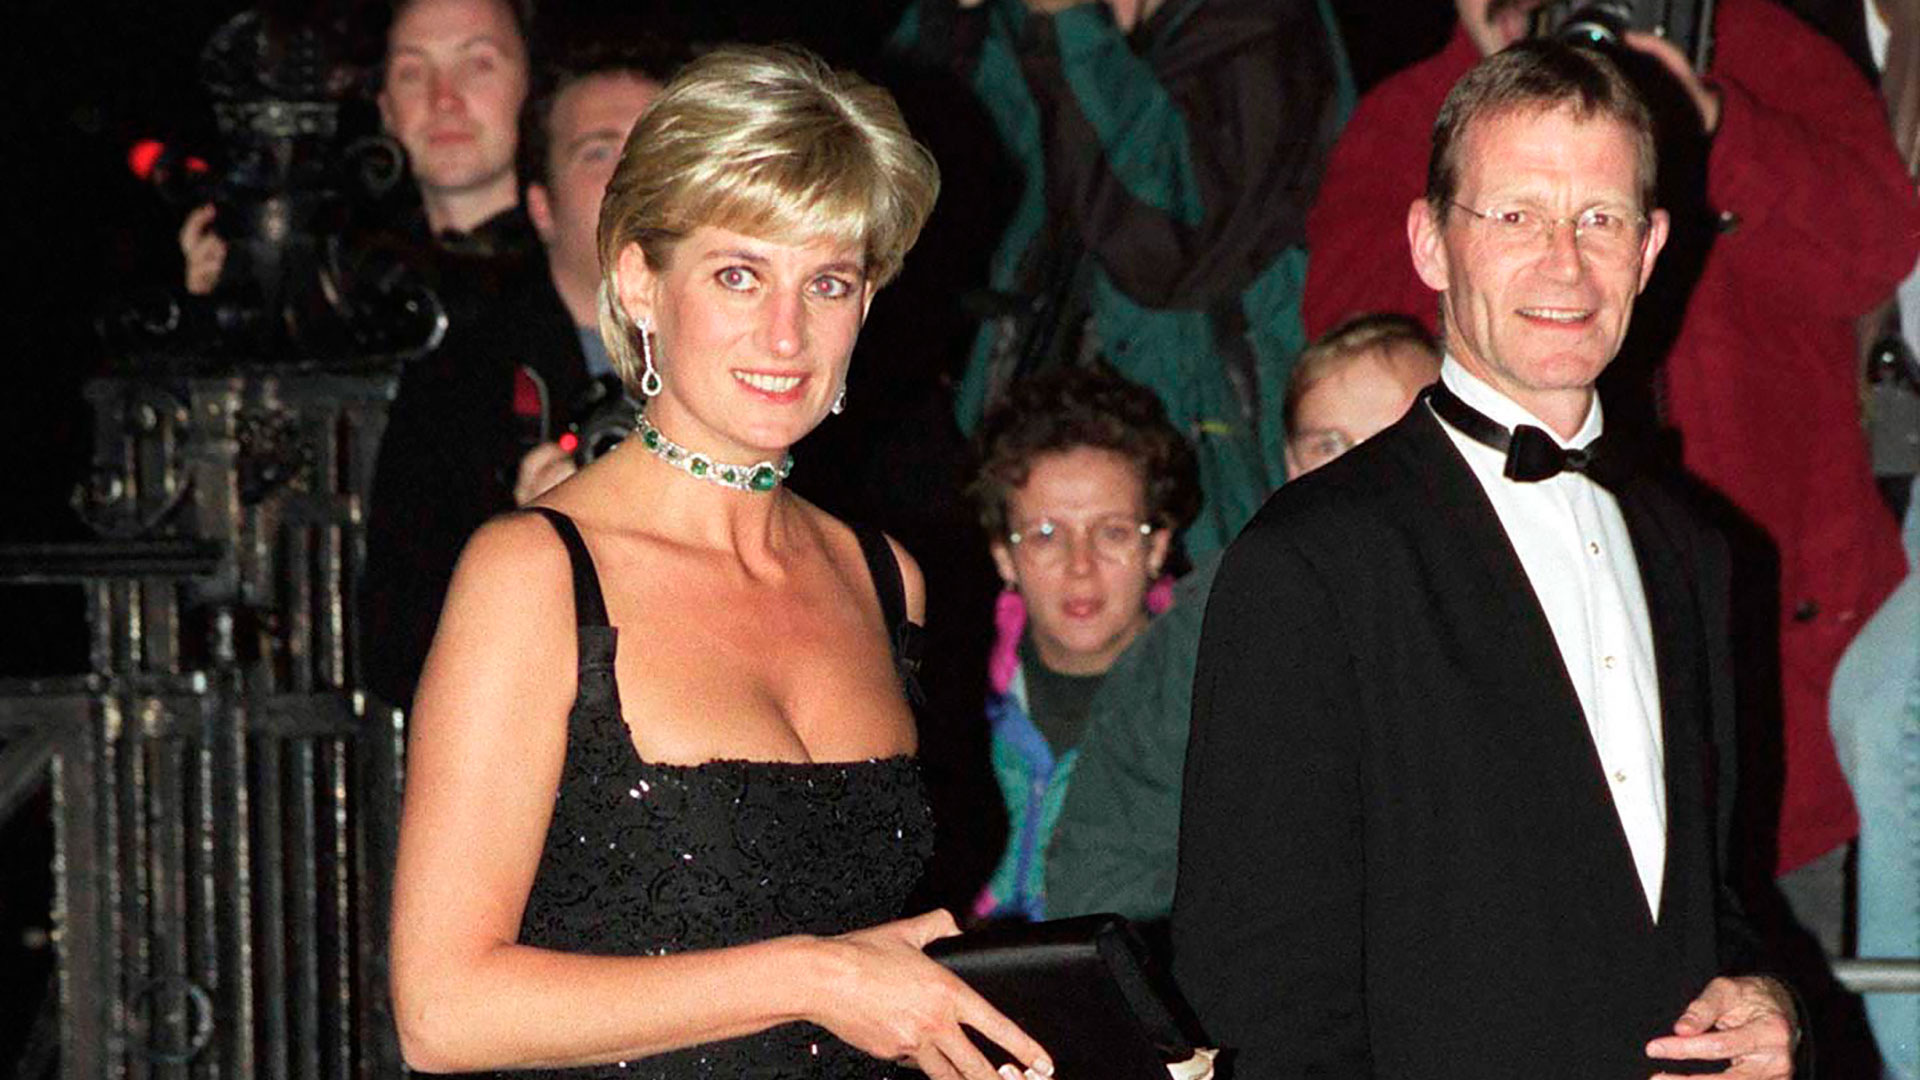 Para su cumpleaños 36, Diana eligió un vestido negro obsequio del diseñador Jacques Azagury. "Lo envié al palacio de Kensington y Diana se enamoró. Creo que tenía otra opción para esa noche, pero terminó llevando mi diseño". (Getty Images)